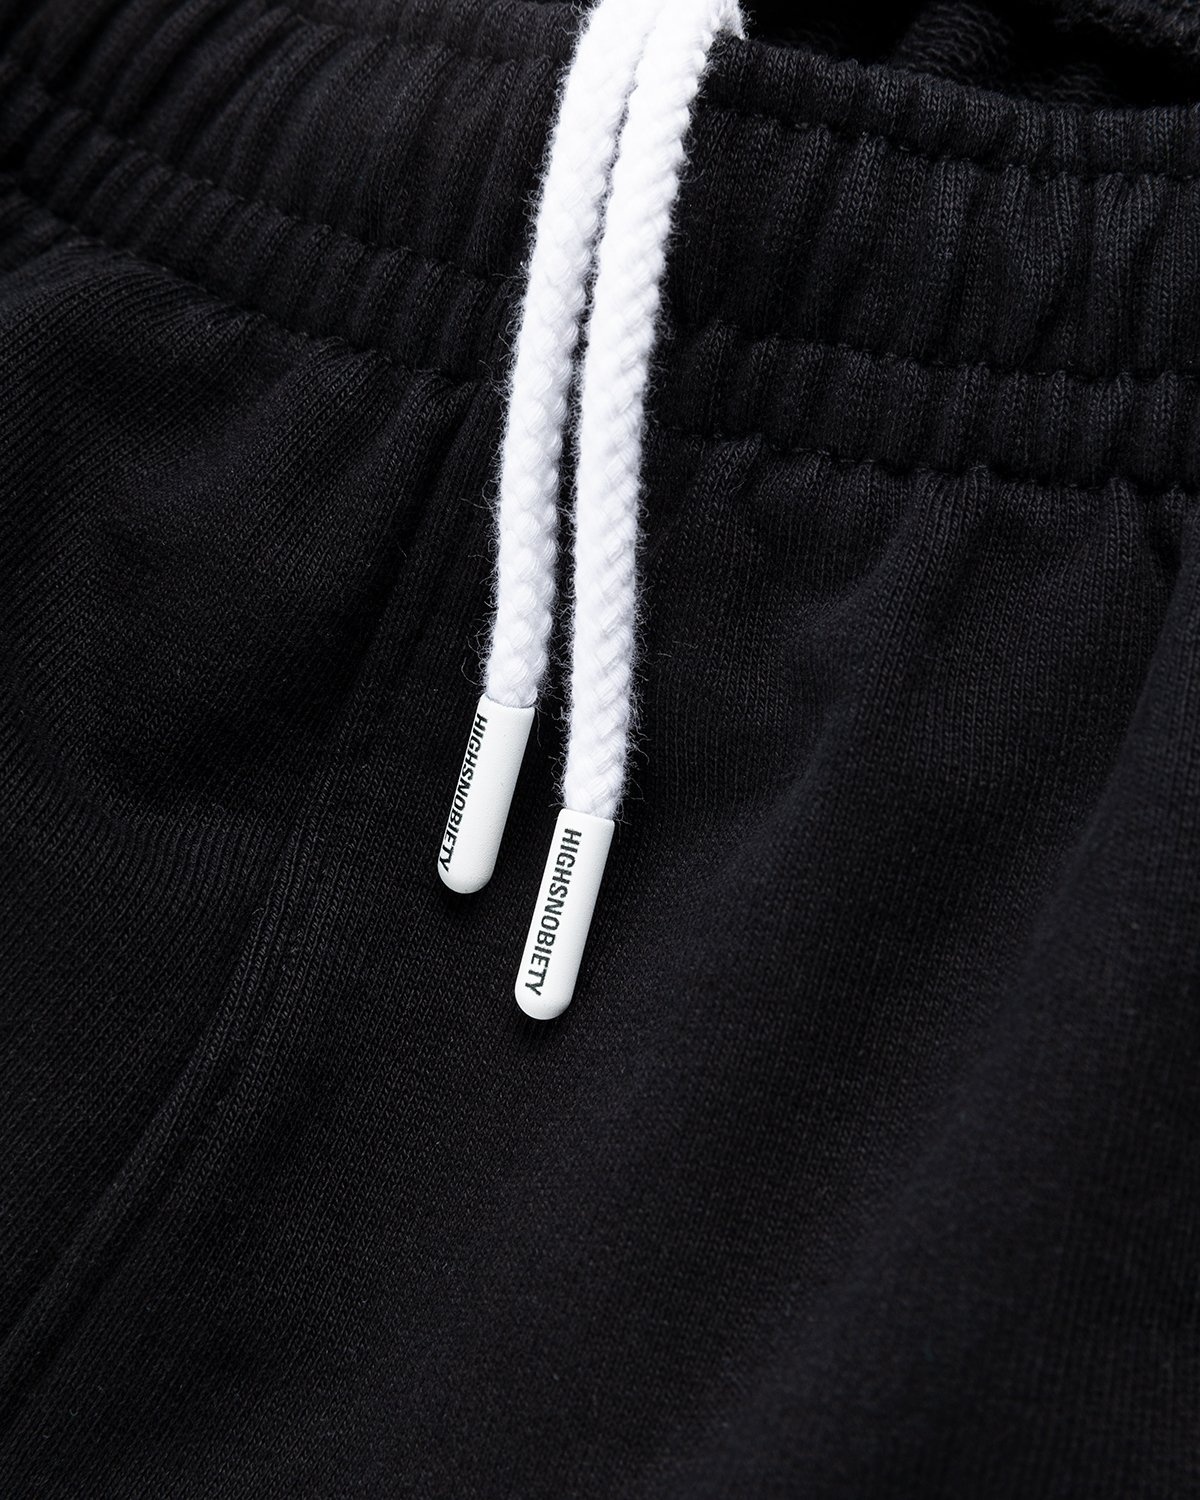 Highsnobiety – Staples Shorts Black - Shorts - Black - Image 6